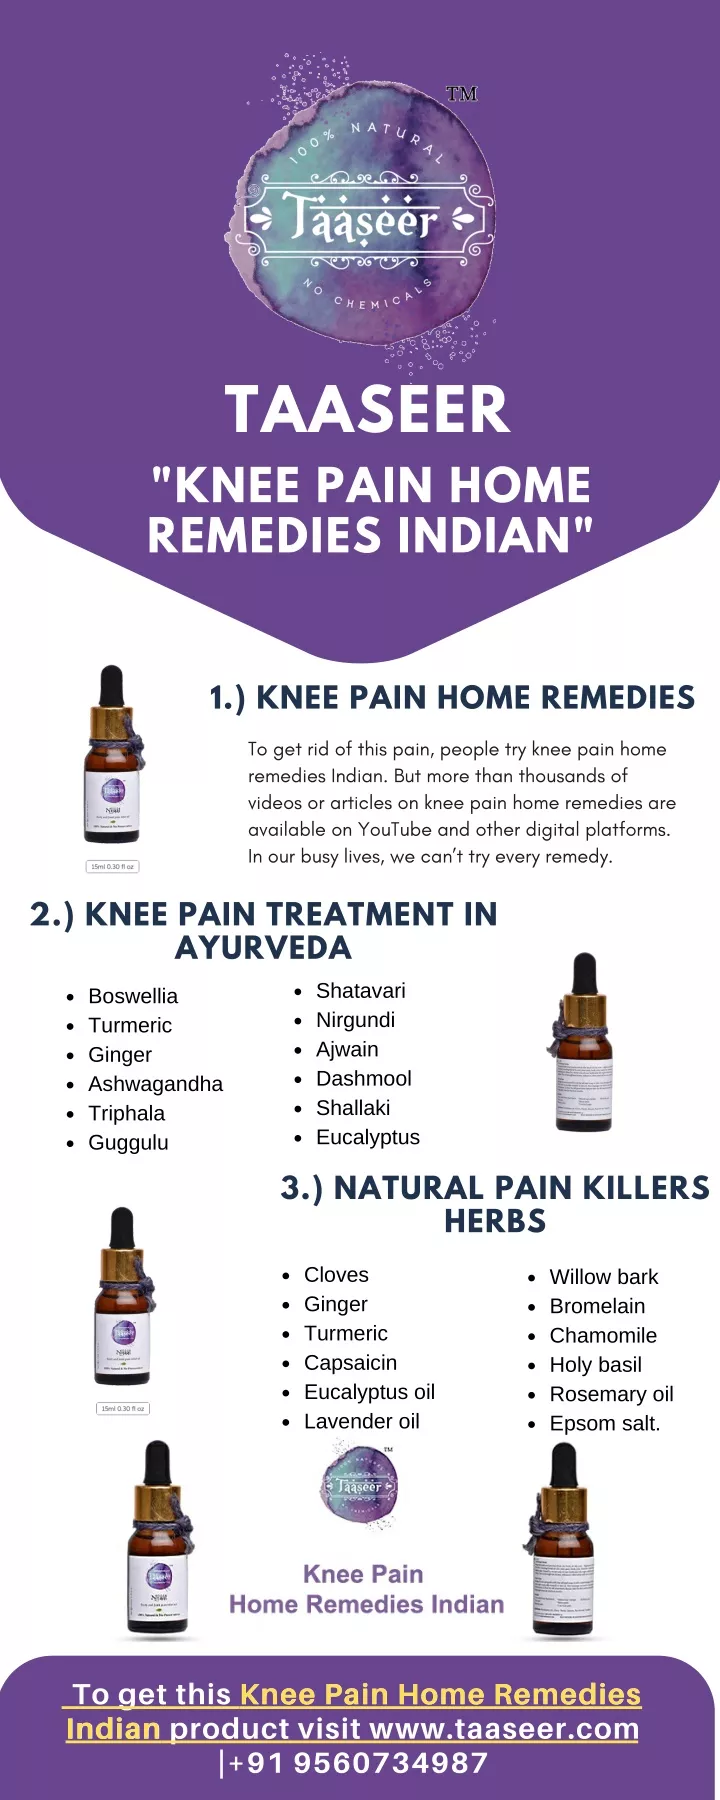 taaseer knee pain home remedies indian